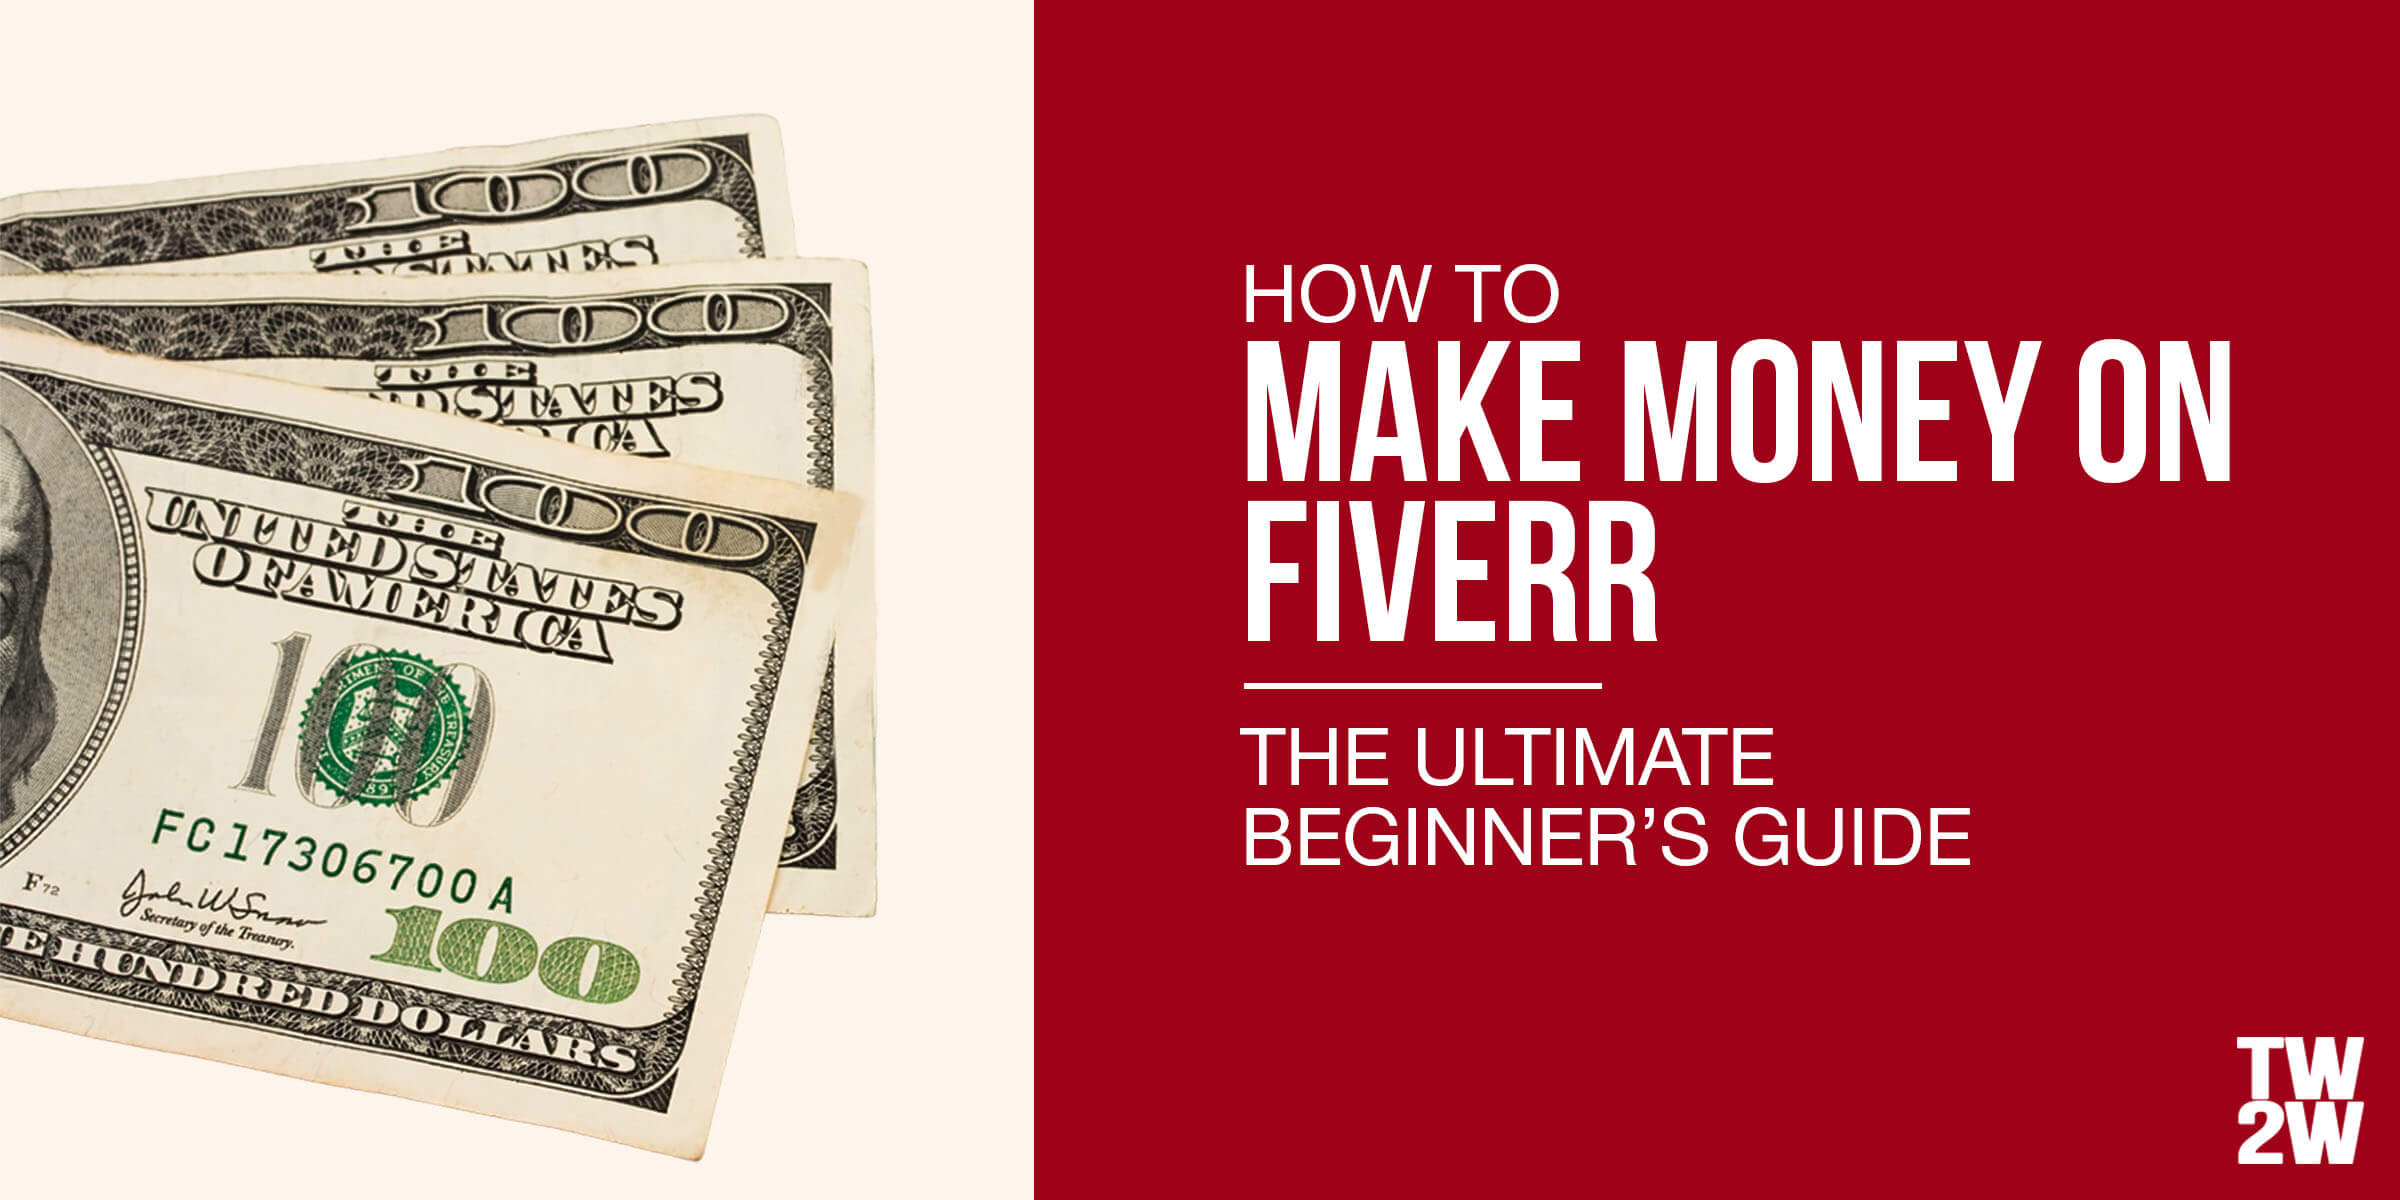 Is Fiverr a legit way to make money?